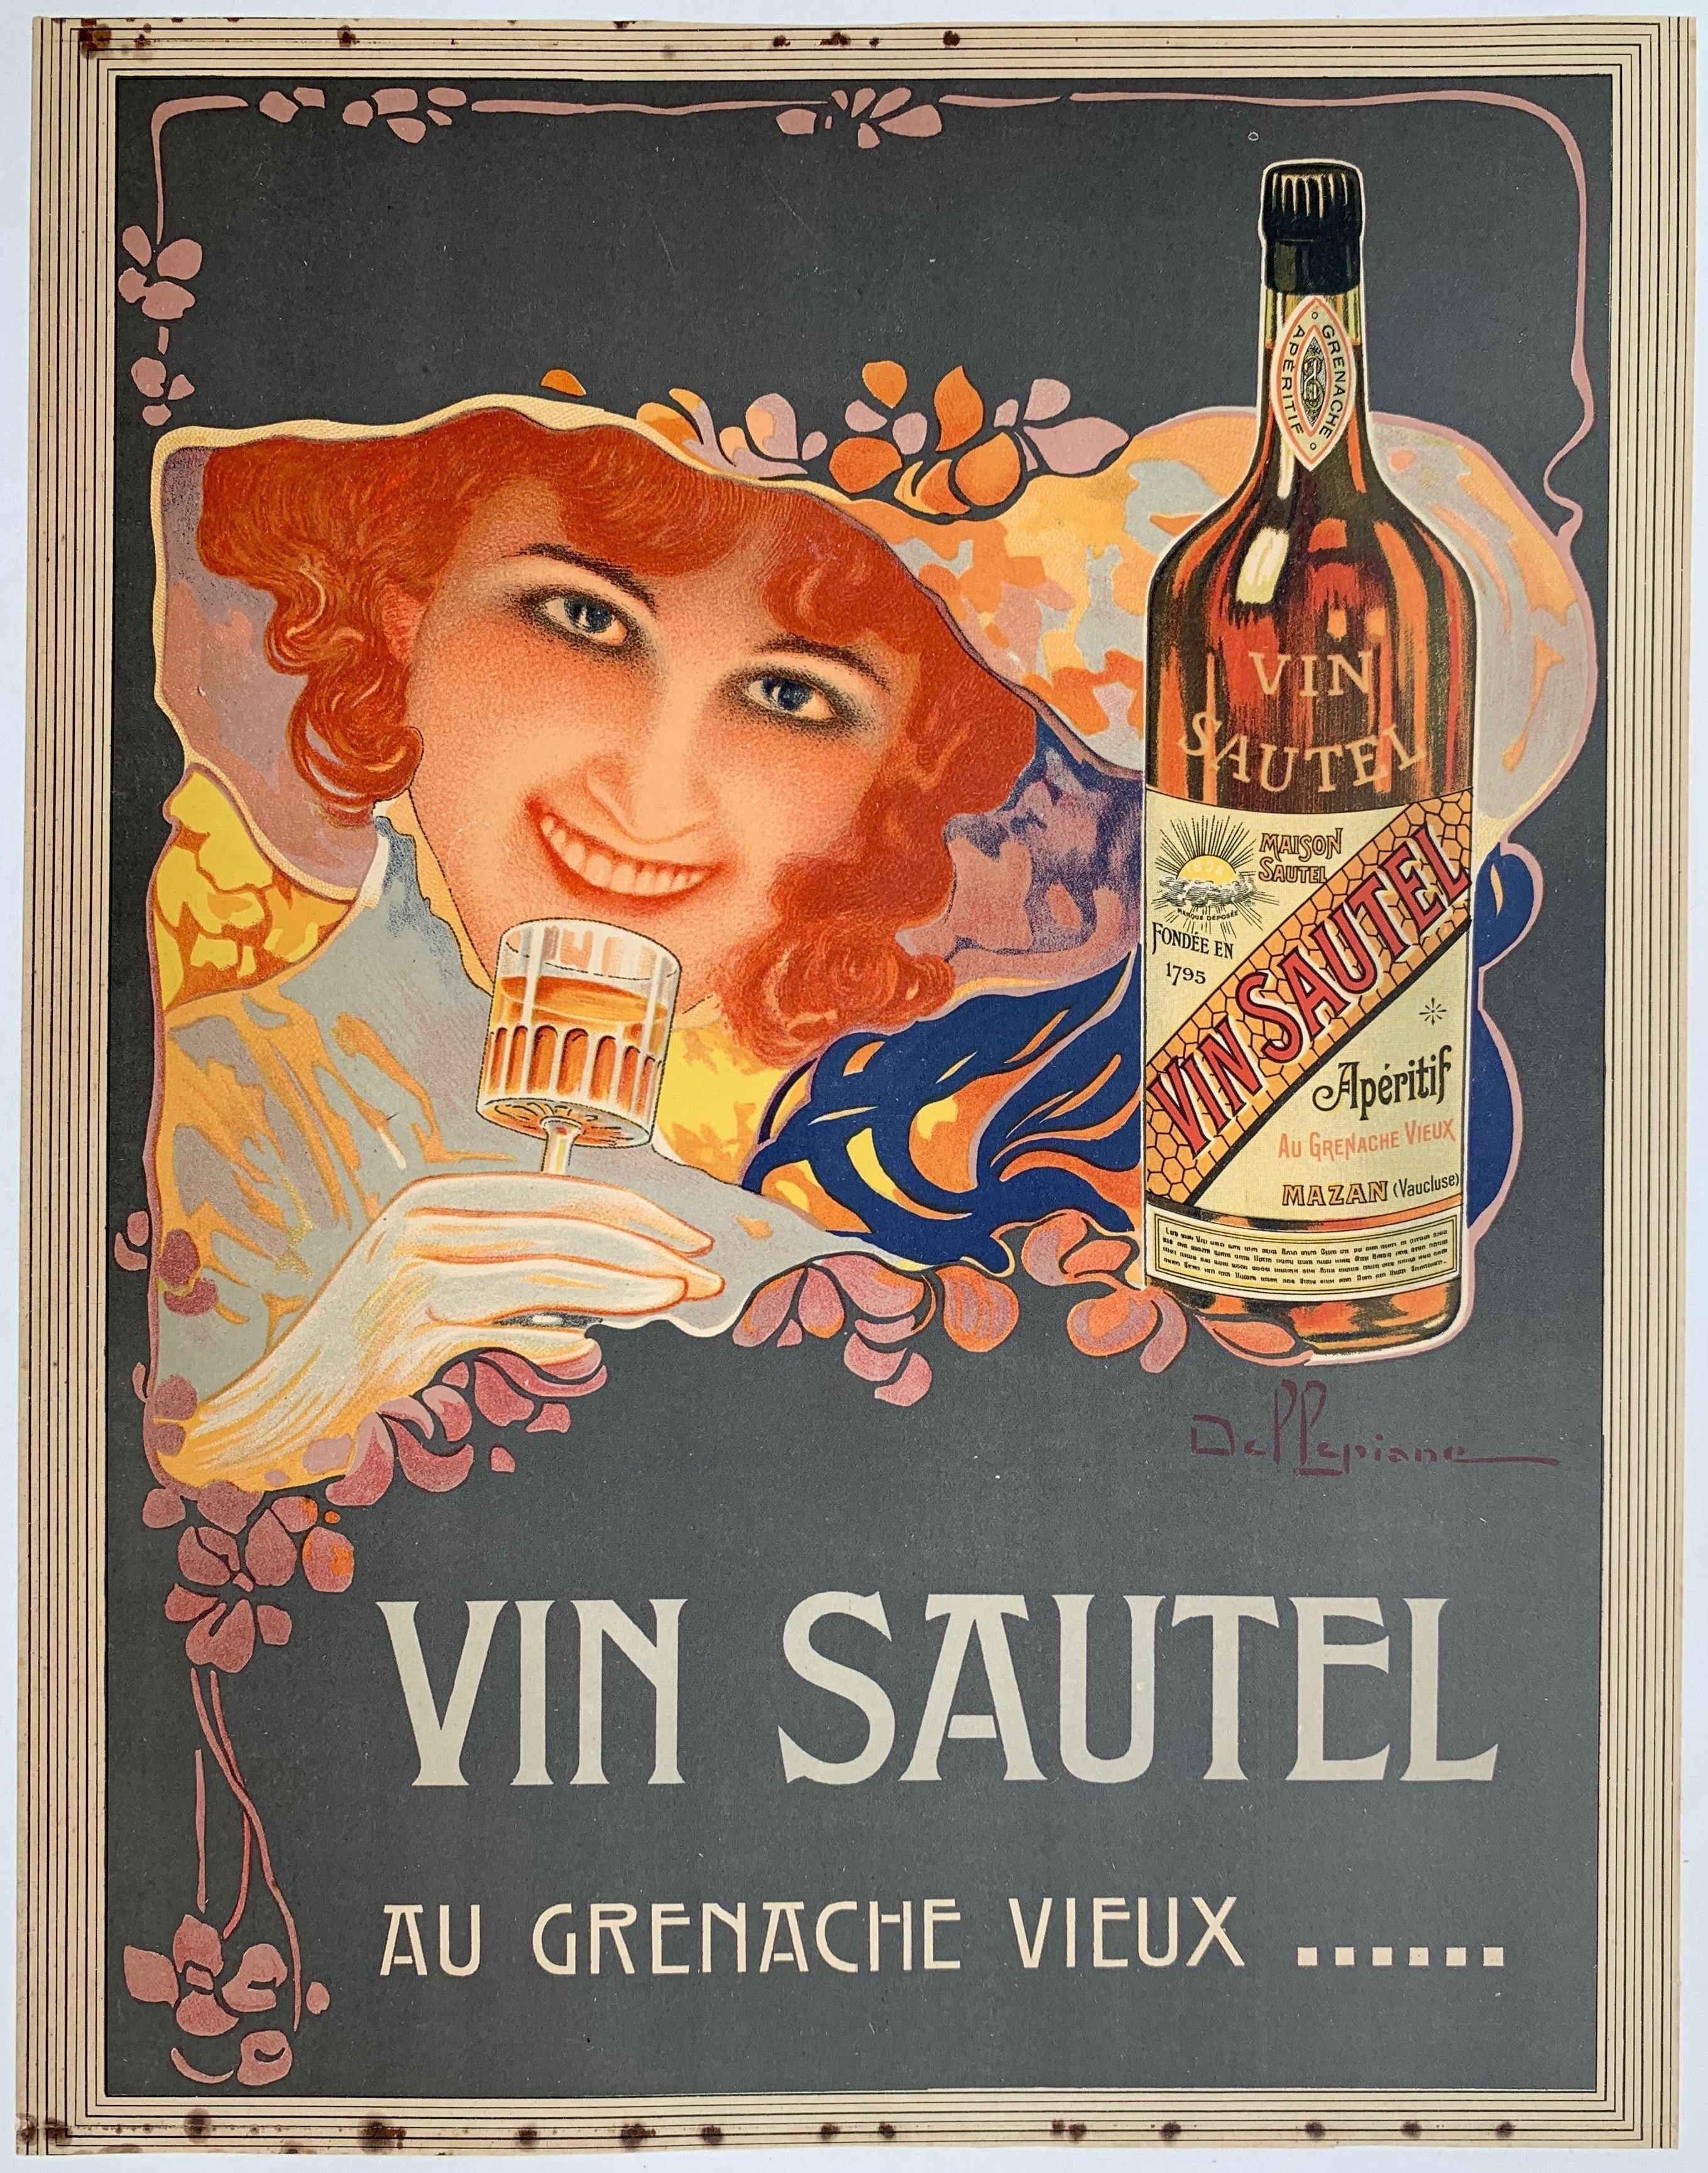 Vin Sautel Au Grenache Vieux